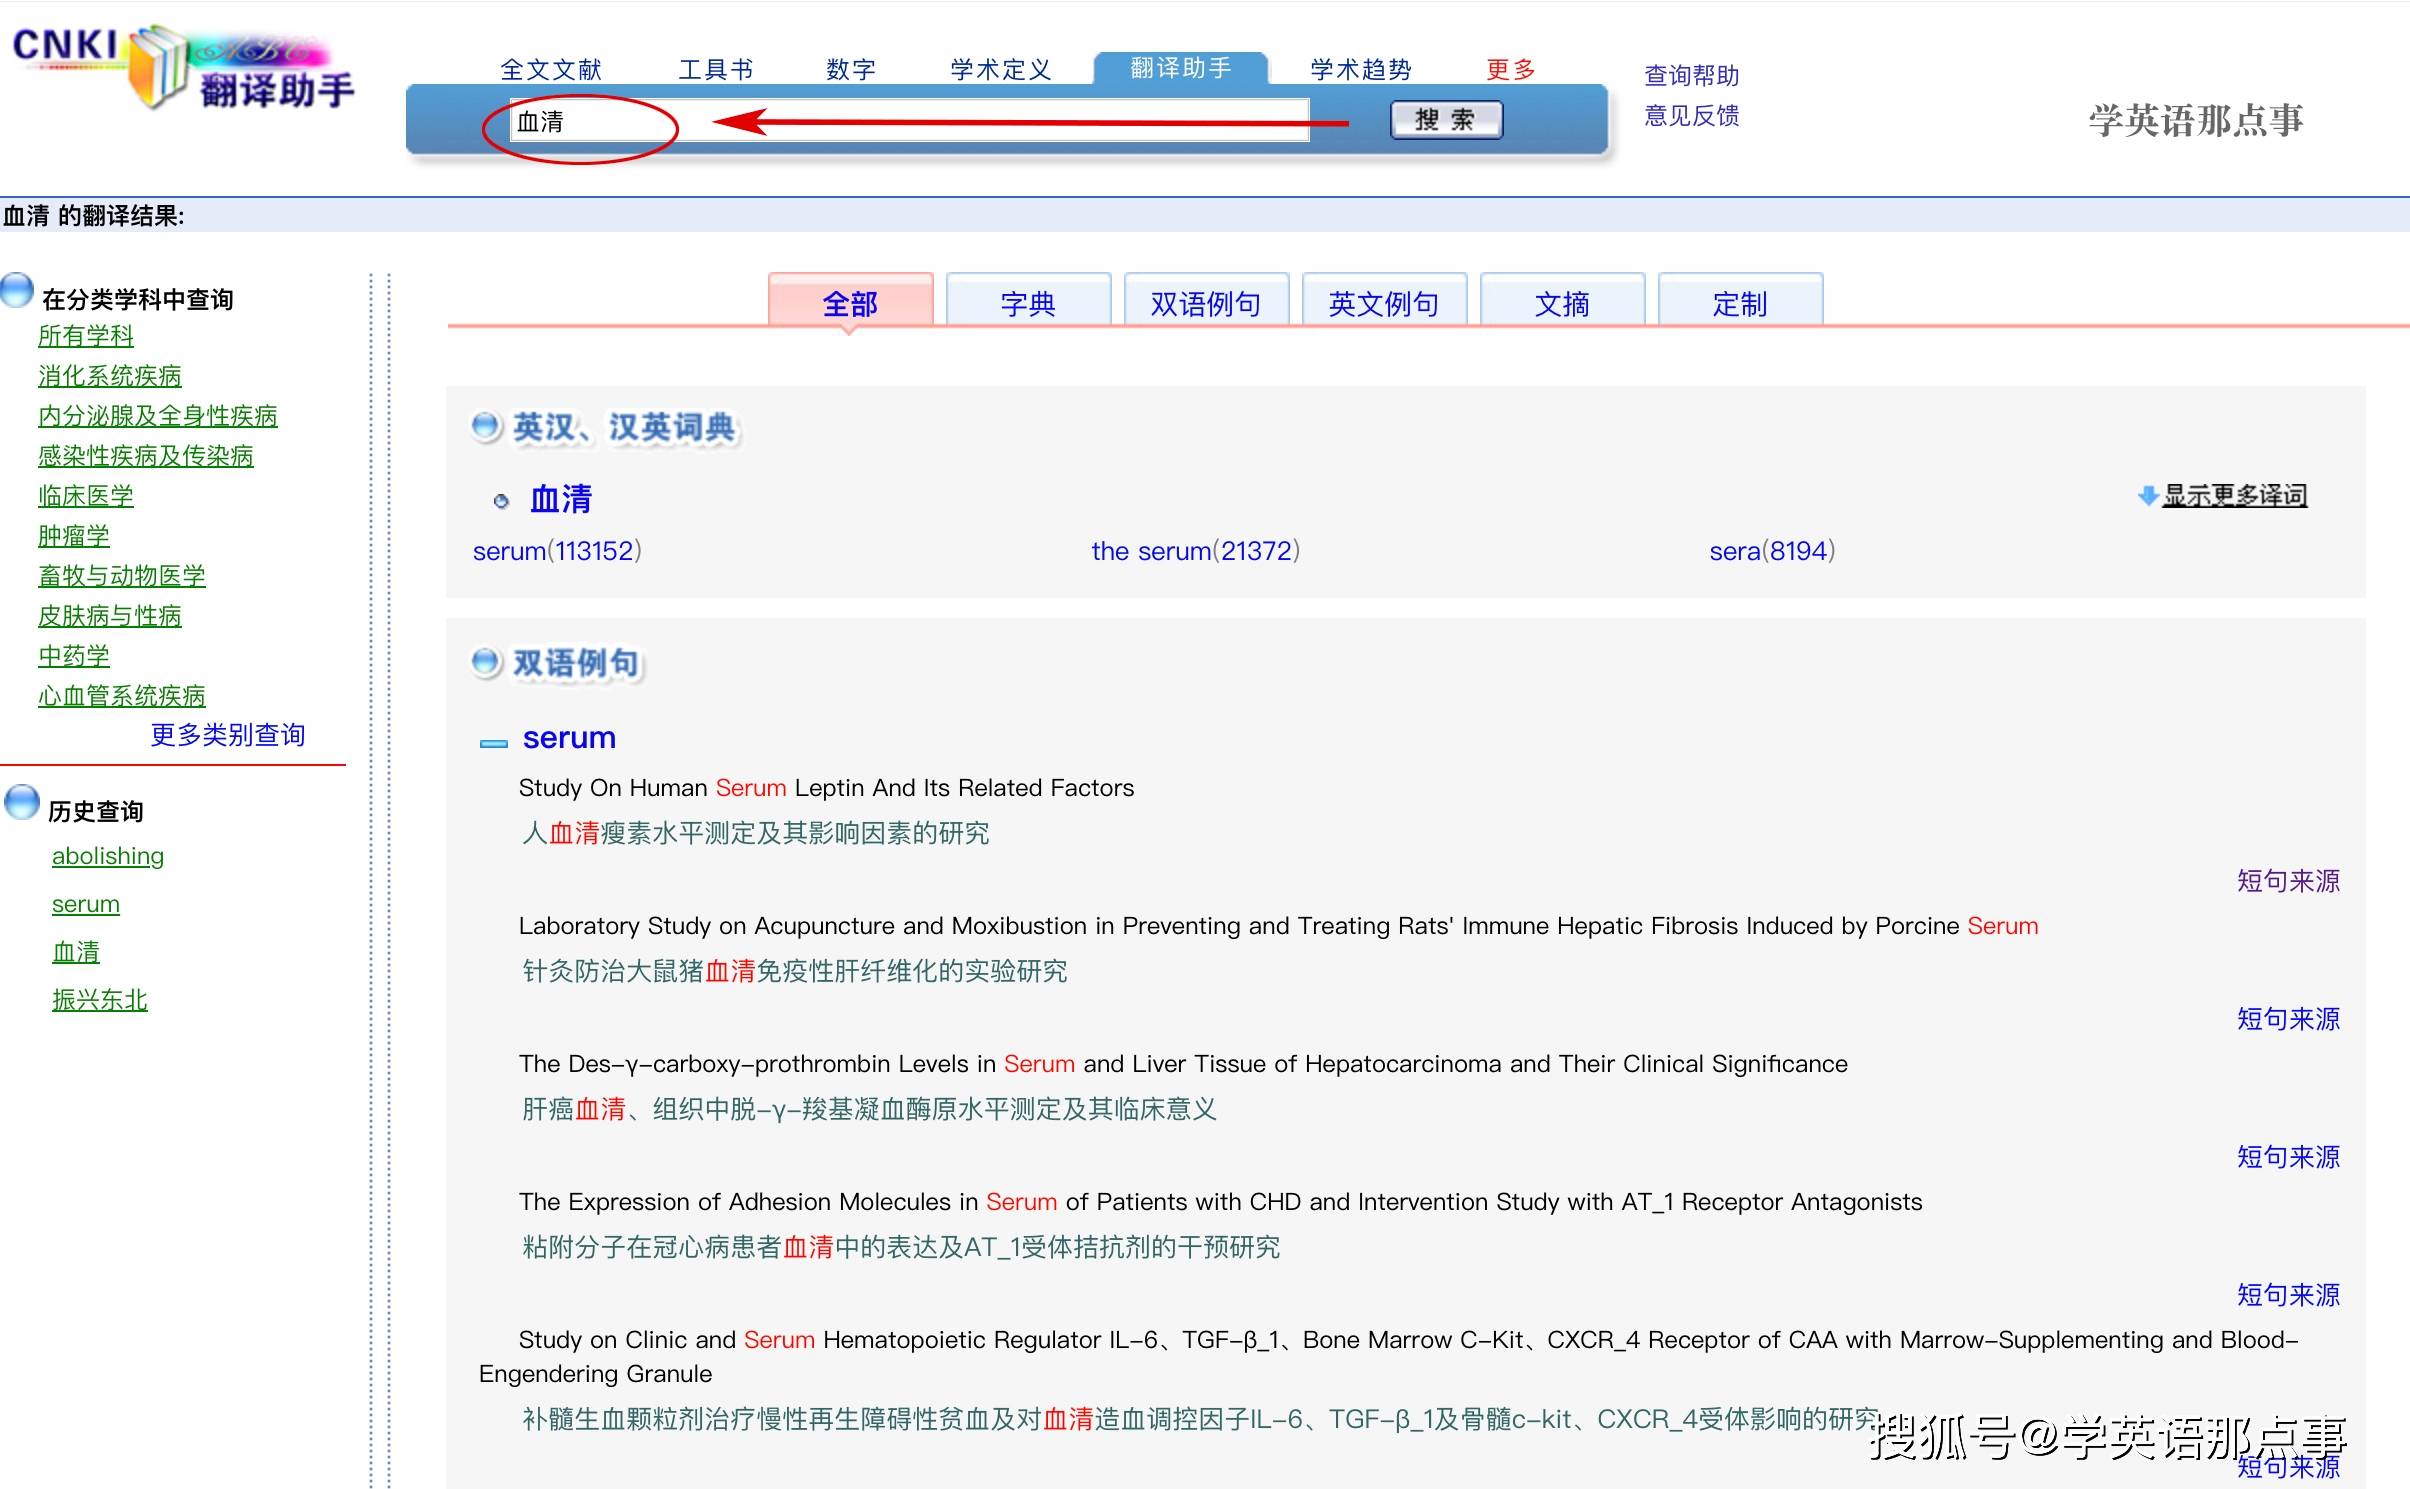 推荐一款专业在线英语翻译工具:cnki翻译助手